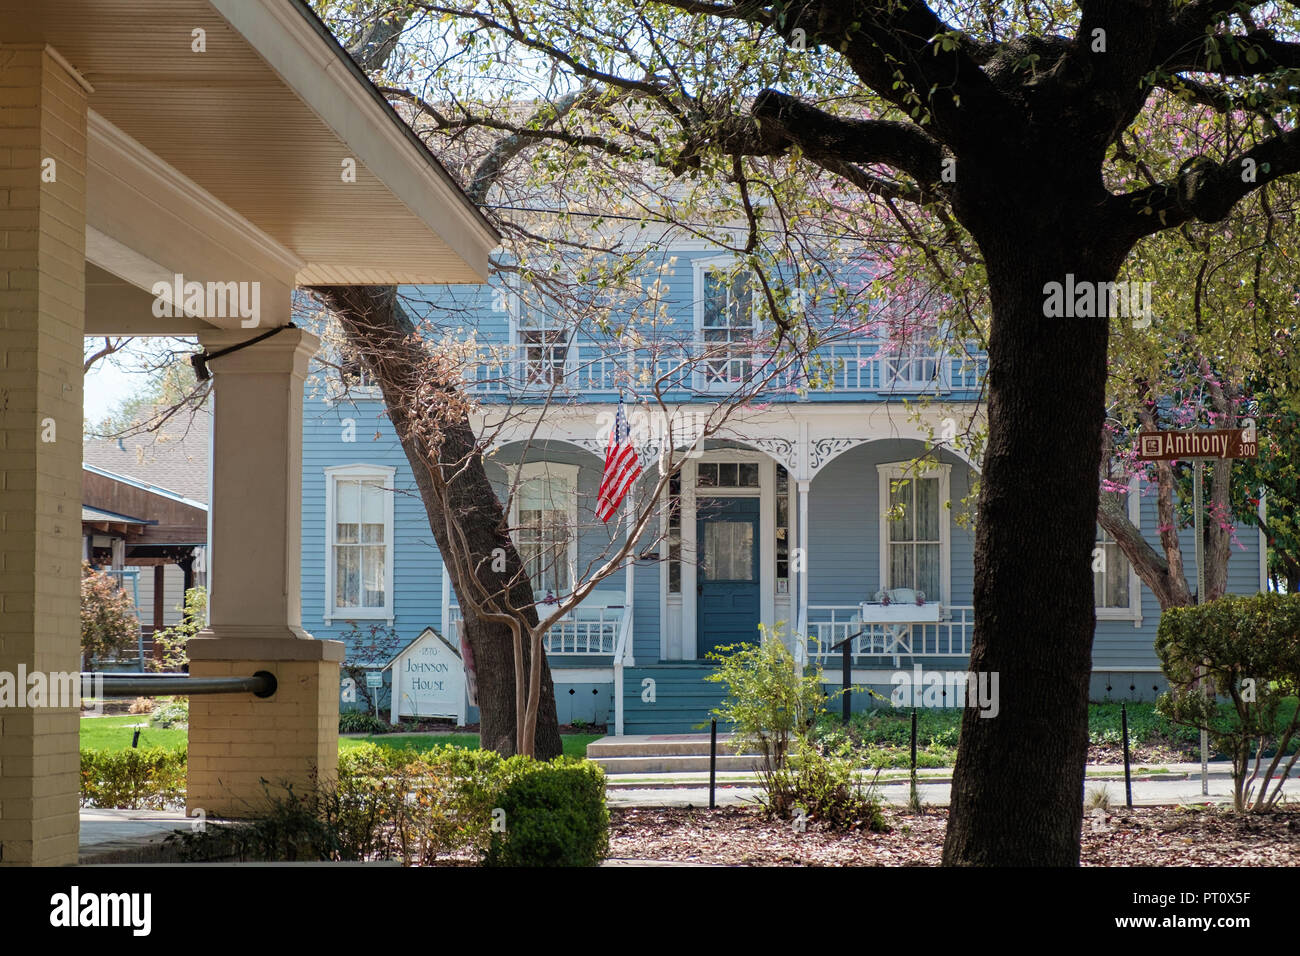 Casa de dos pisos shingled azul con blanco marcos de ventana Italianate eave soportes y bandera Americana. La casa de Johnson, plaza de castaños, McKinney, Texas. Foto de stock